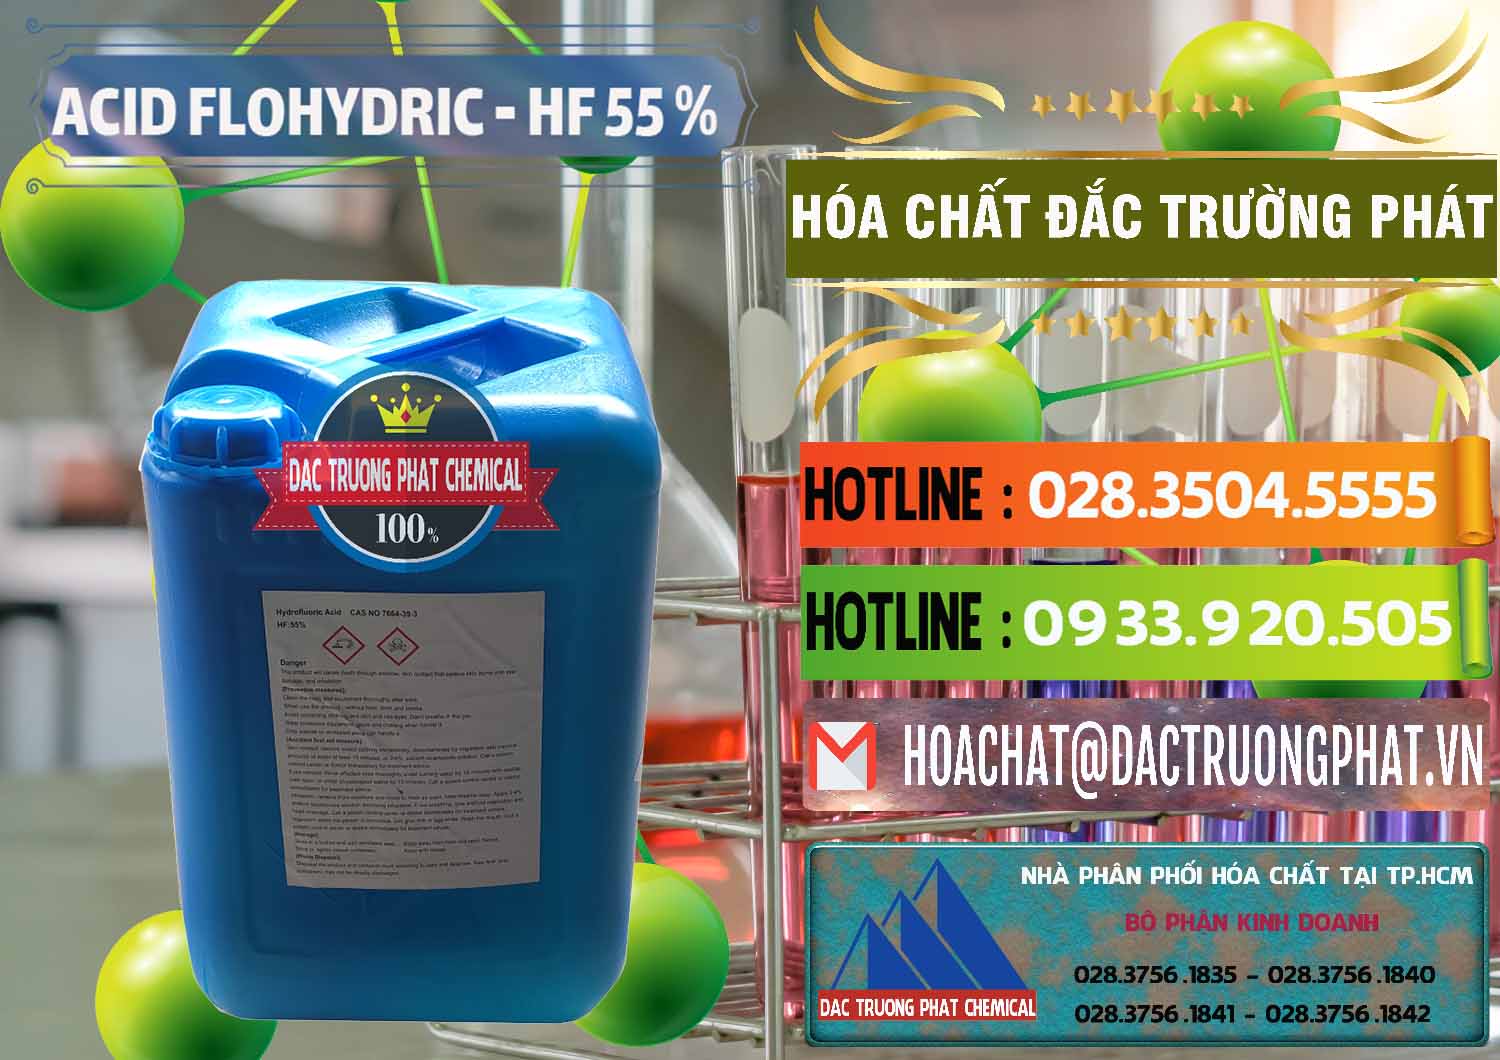 Đơn vị chuyên bán _ cung cấp Axit HF - Acid HF 55% Can Xanh Trung Quốc China - 0080 - Cty cung cấp và phân phối hóa chất tại TP.HCM - cungcaphoachat.com.vn